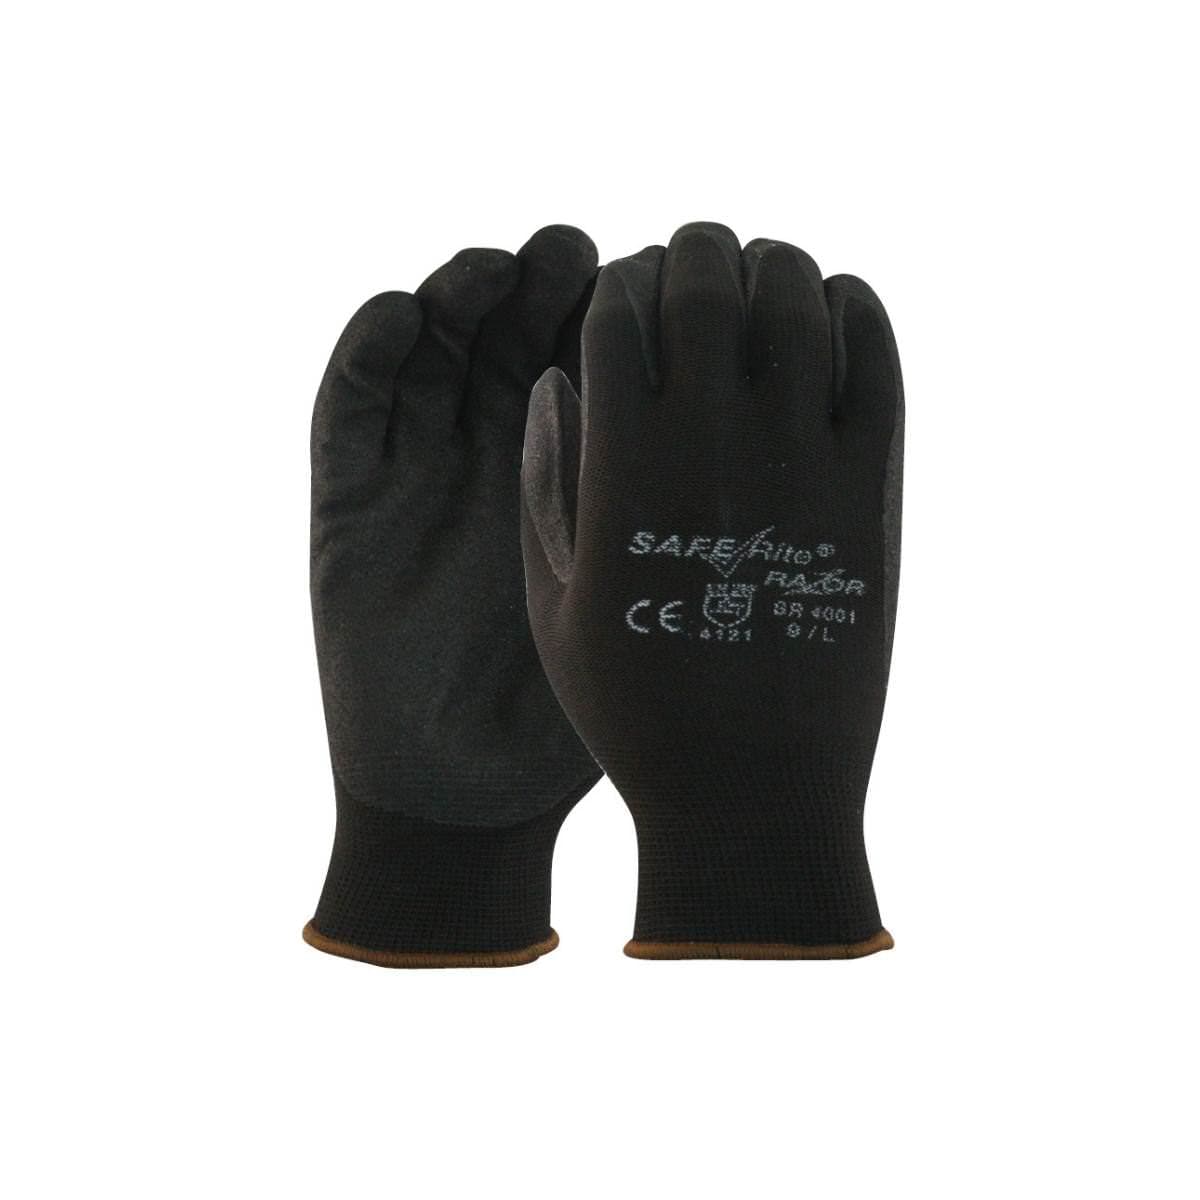 SafeRite® Razor Nitrile Glove SR4001 (Pack of 12)